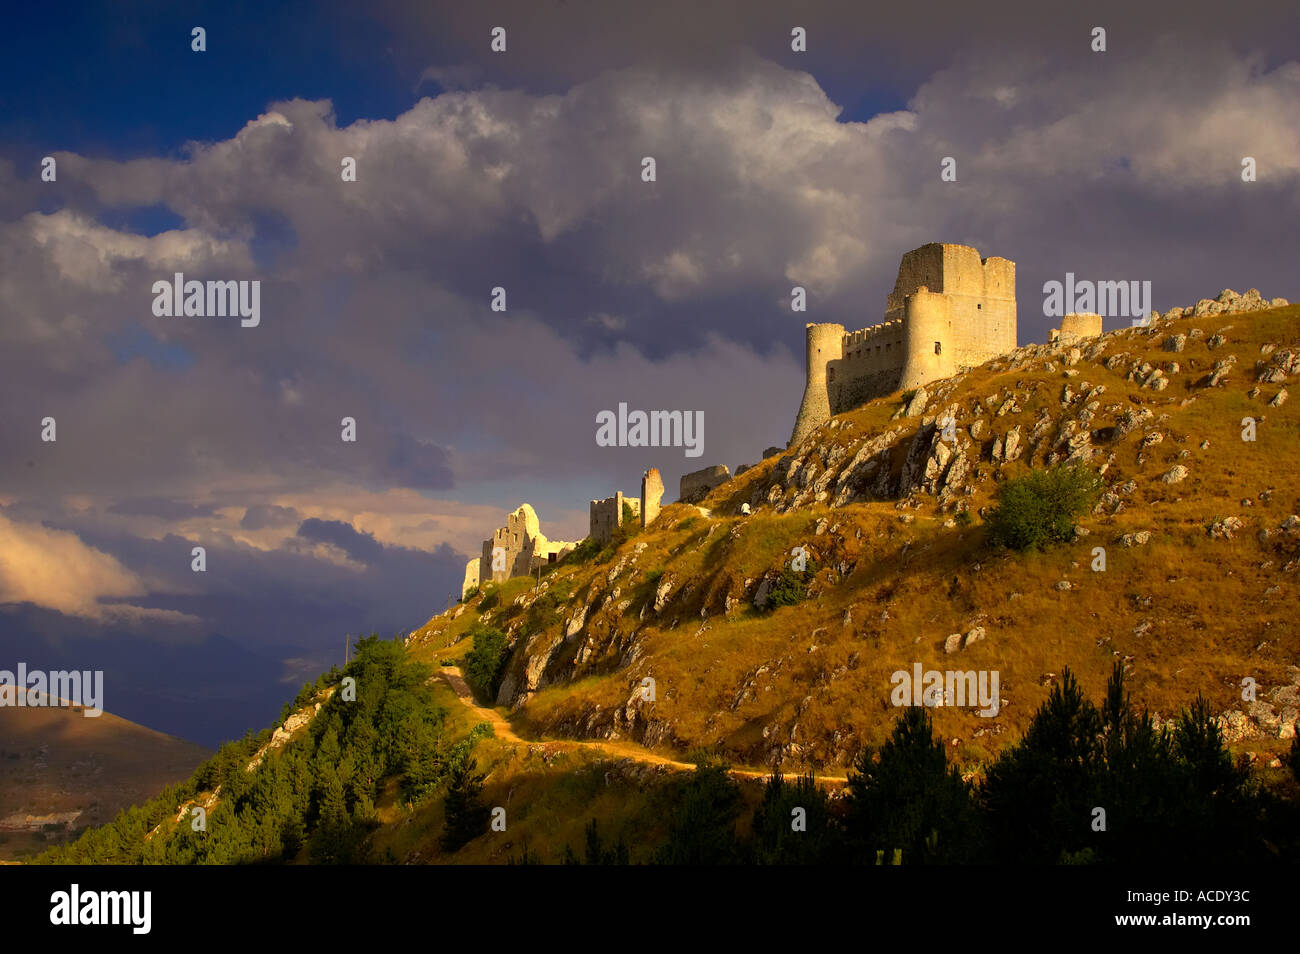 The ruins of Rocca Calascio in the Gran Sasso National Park Abruzzo Italy Stock Photo